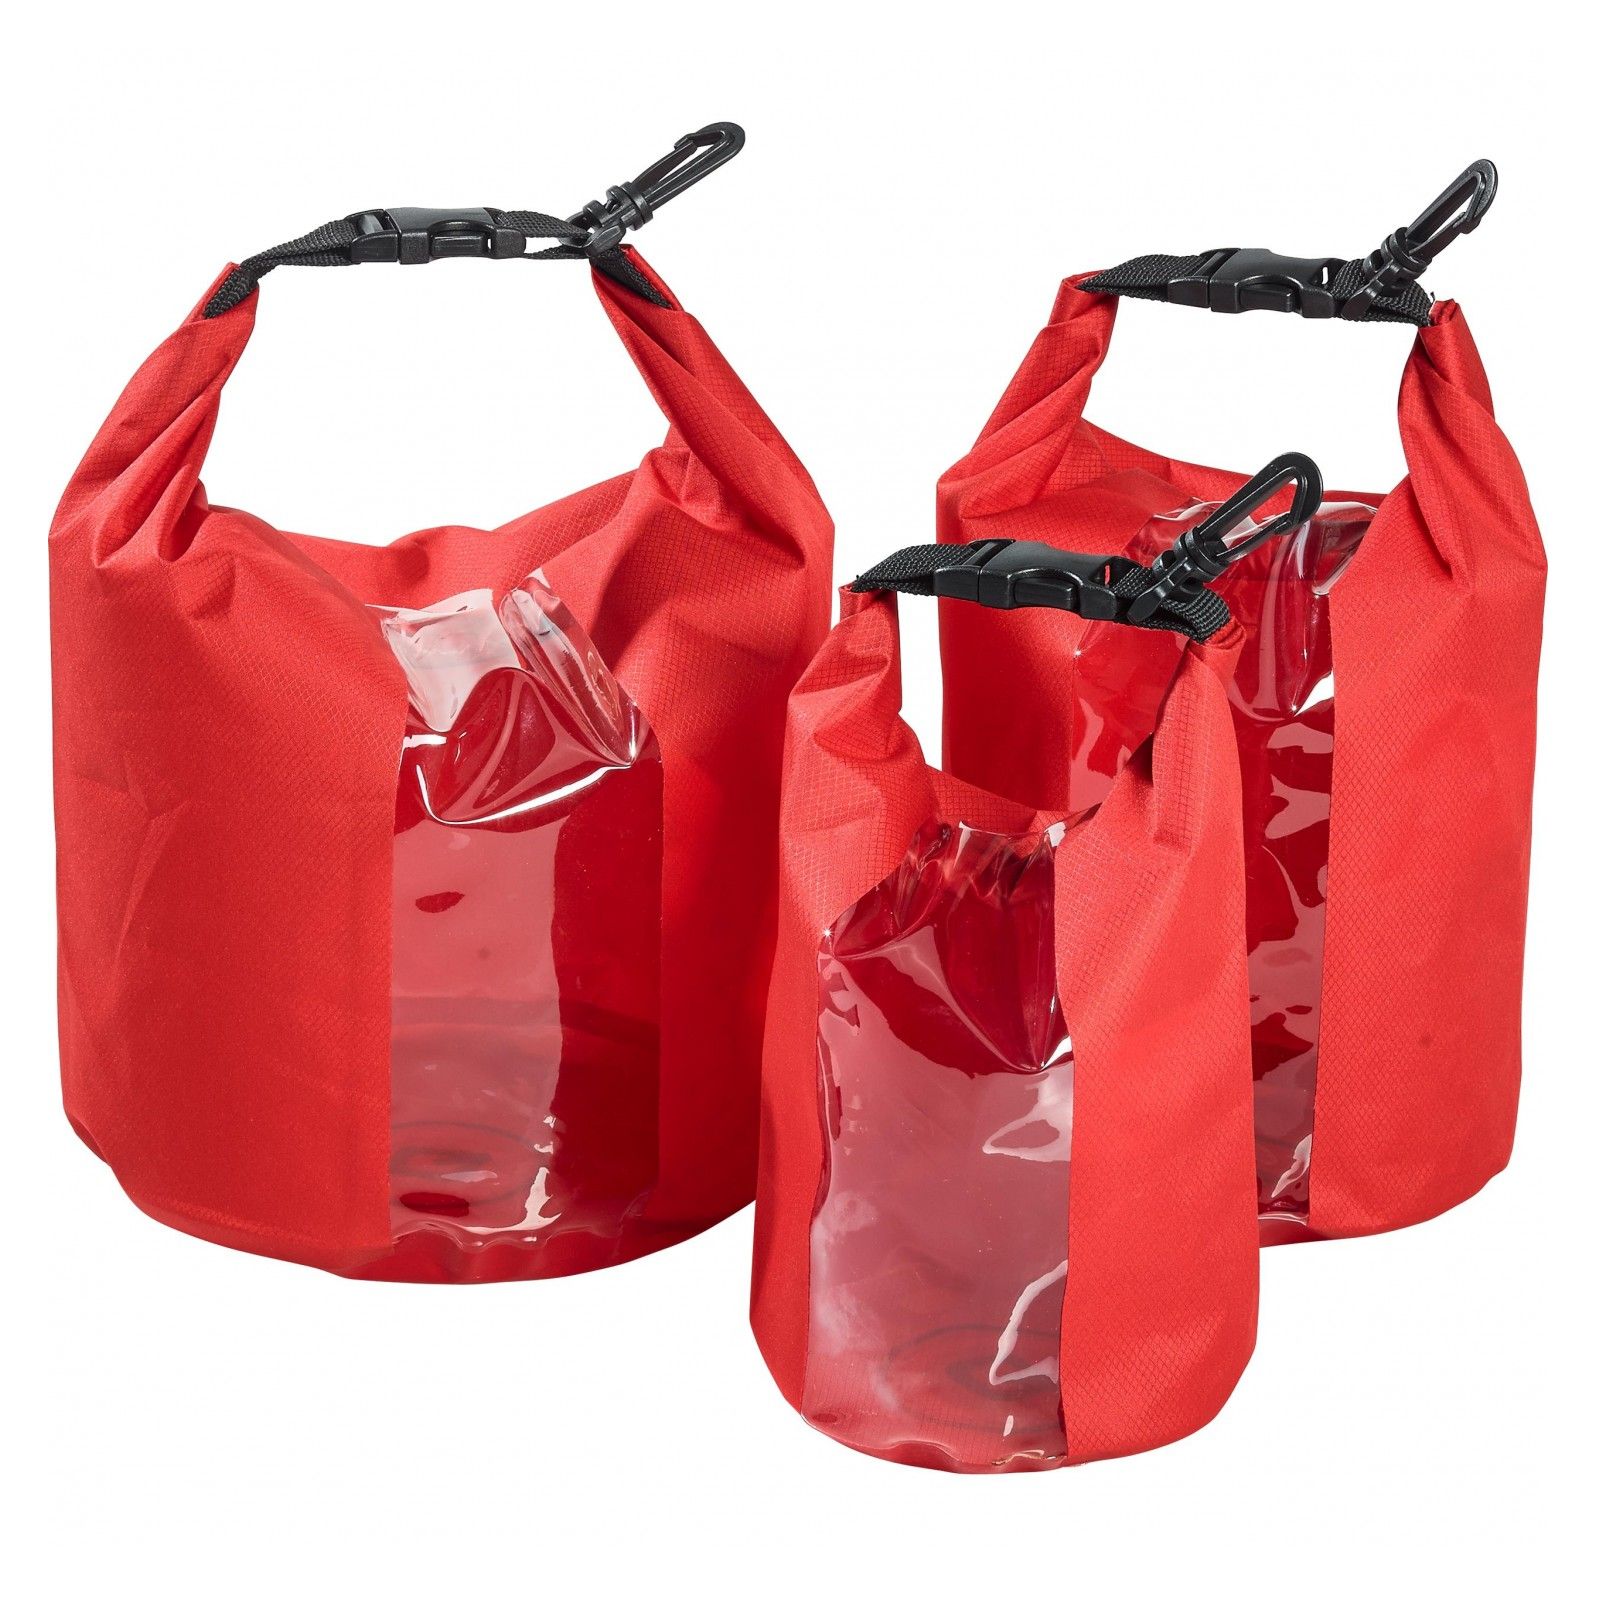 Sacoche Q Bag intérieur waterproof set de 3 pour topcase/valises